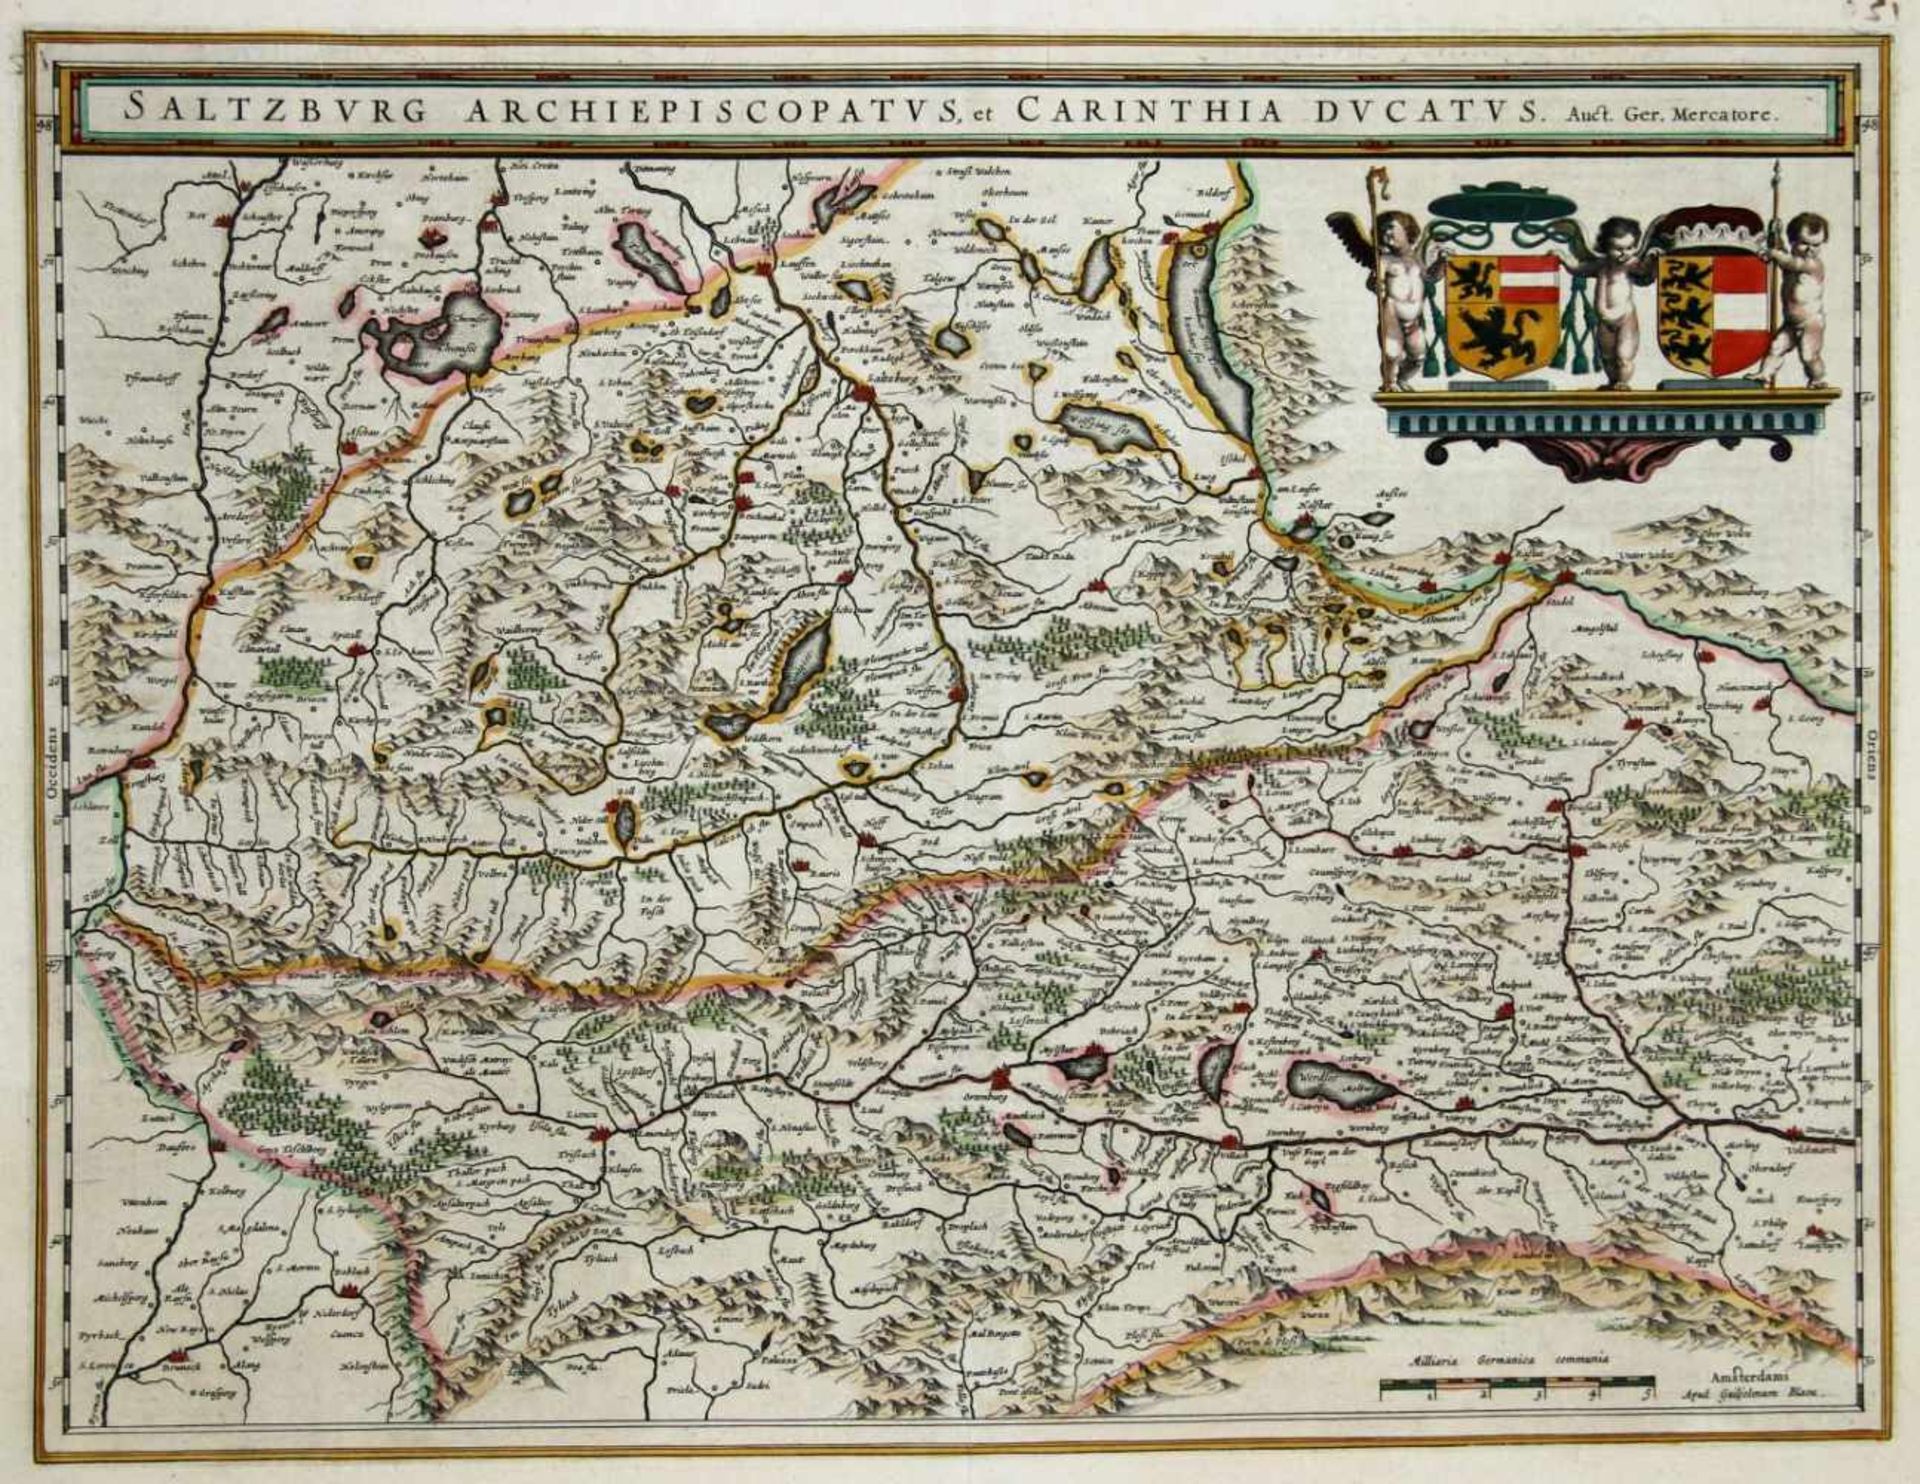 Europa. - Österreich. - Salzburg / Kärnten. -Saltzburg Archiepiscopatus, et Carinthia Ducatus. Auct.